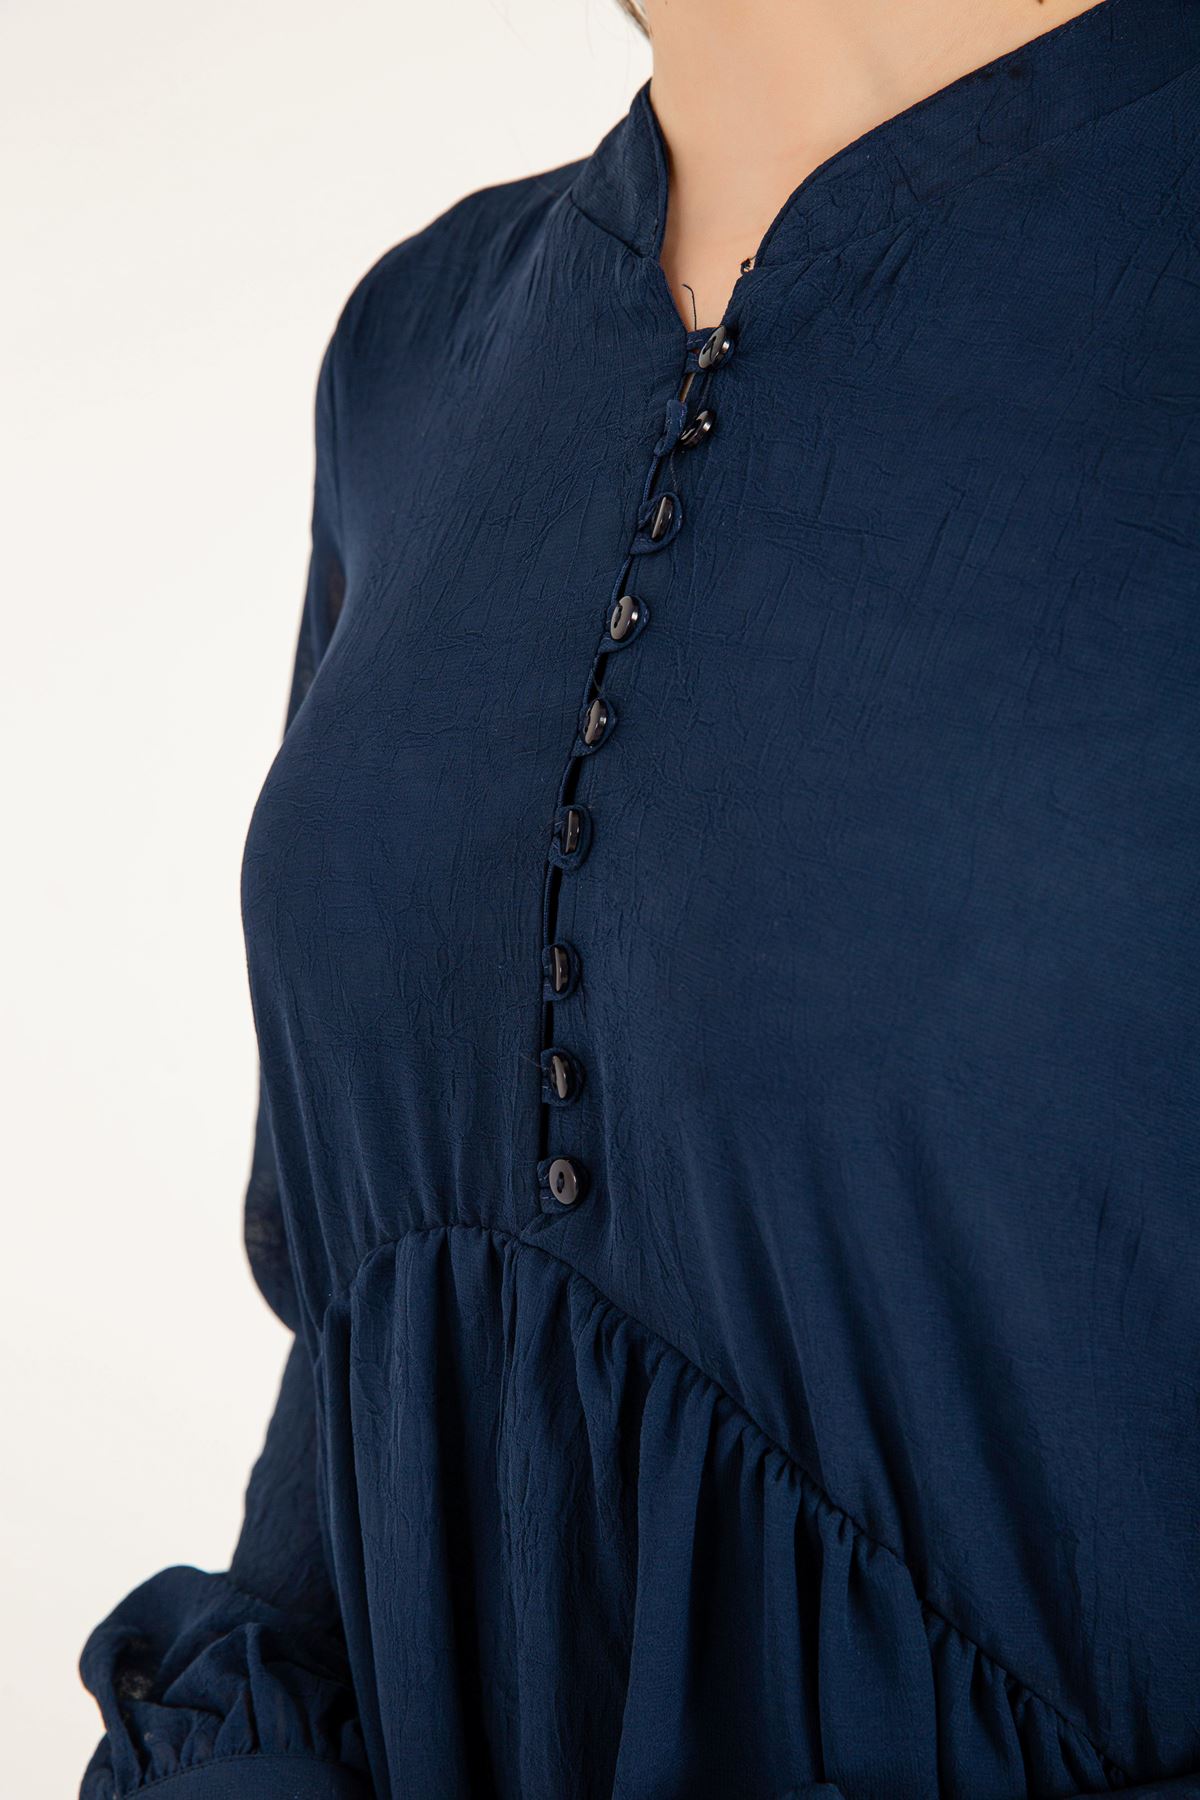 Chiffon Fabric Band Neck Full Fit Women Dress - Navy Blue 